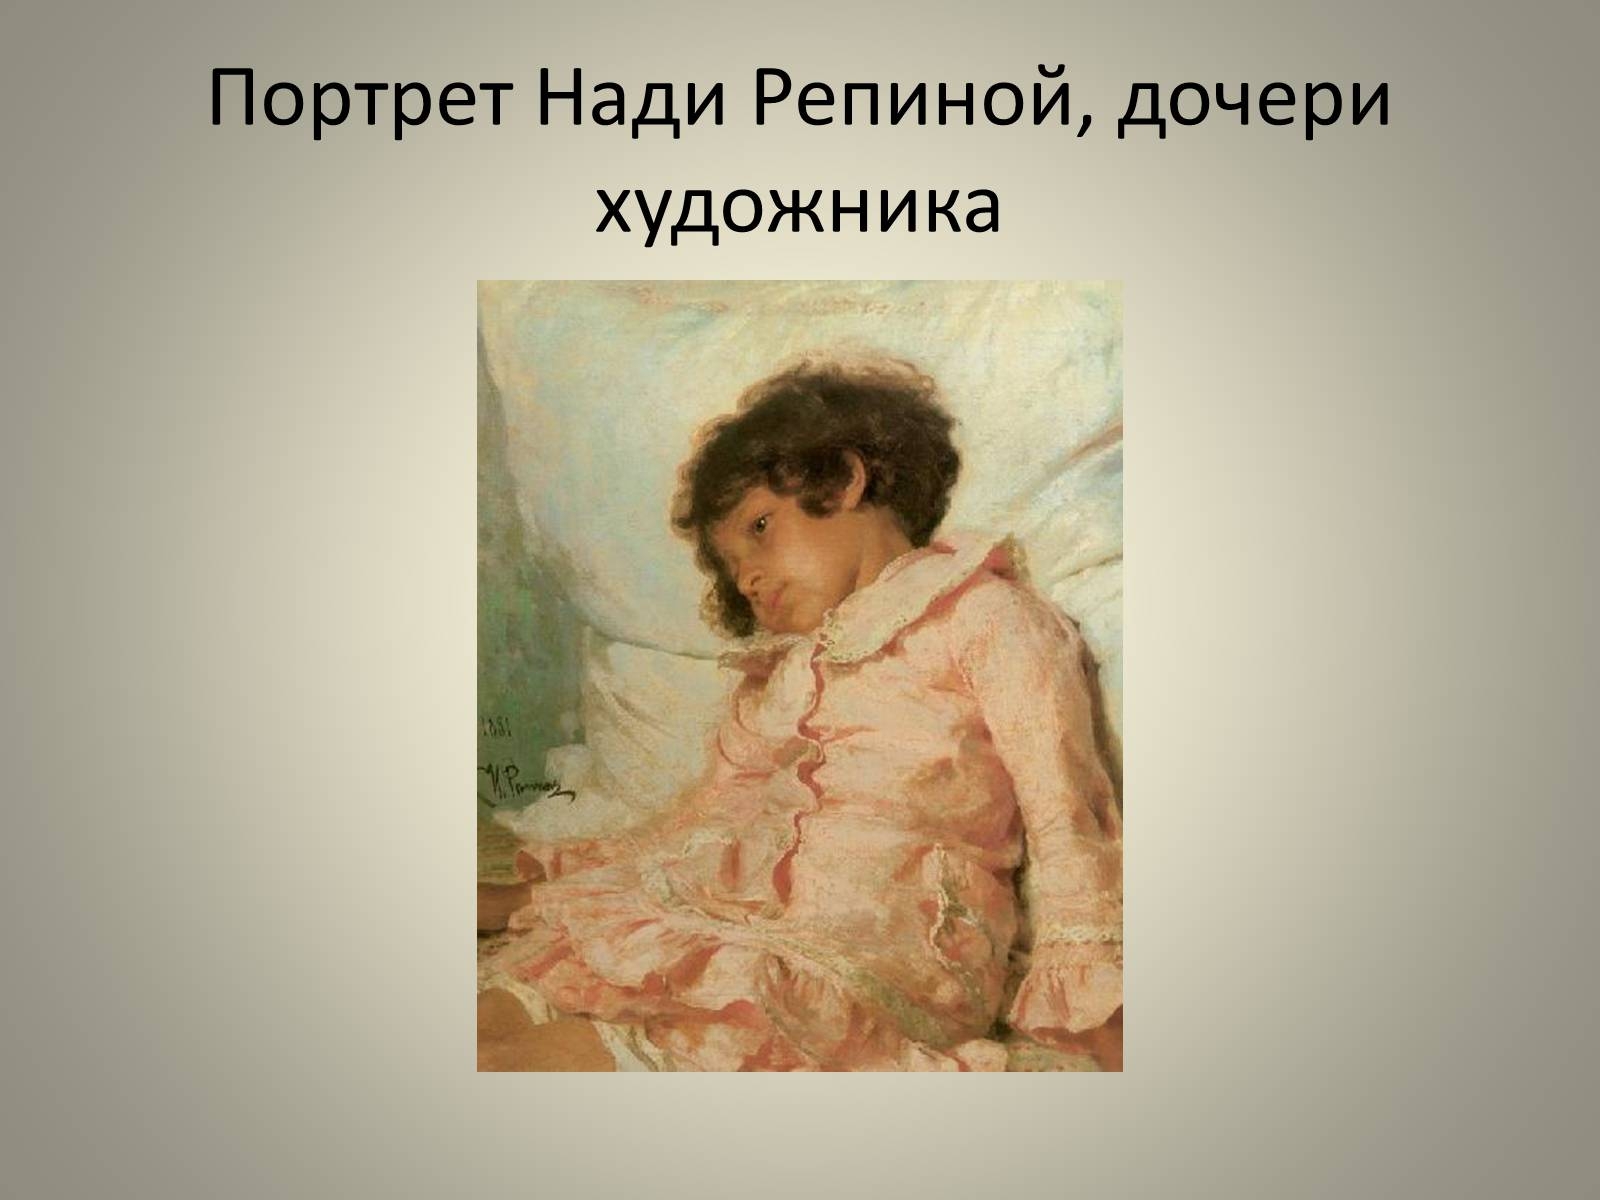 «Портрет Нади Репиной» (1881),